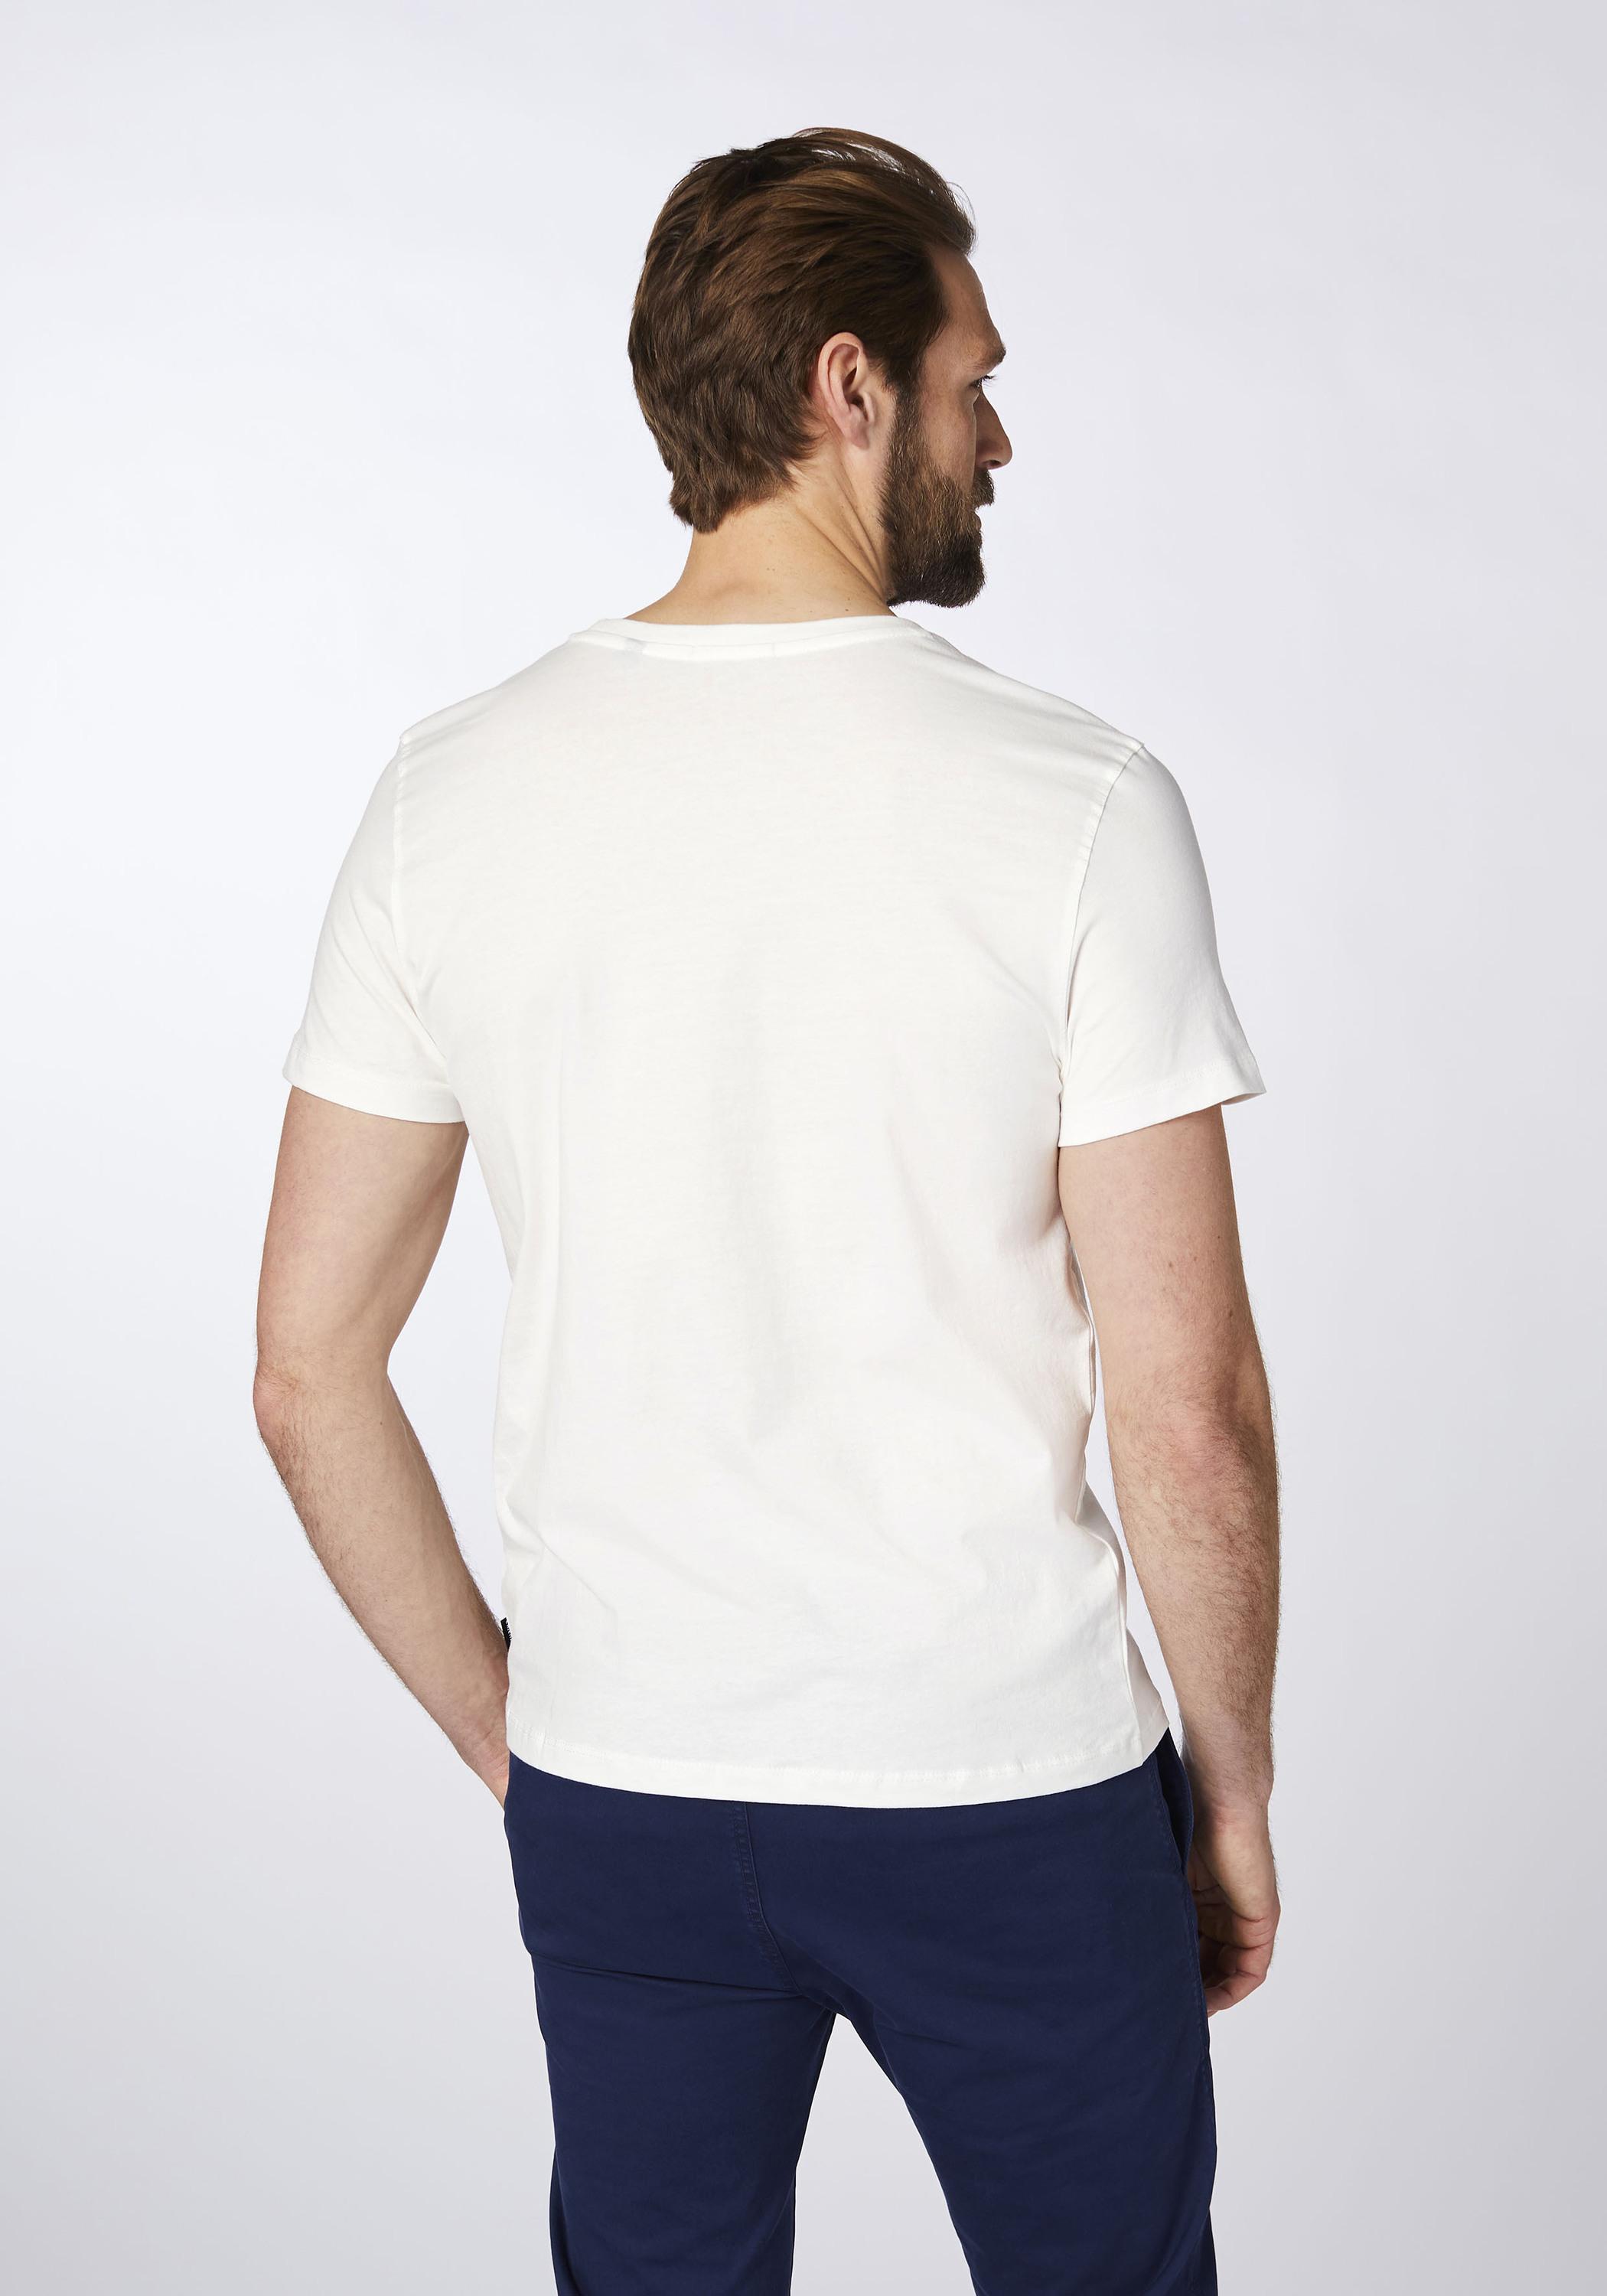 Chiemsee T-Shirt T-Shirt Herren Wht/Md Grn Dif im Online Shop von  SportScheck kaufen